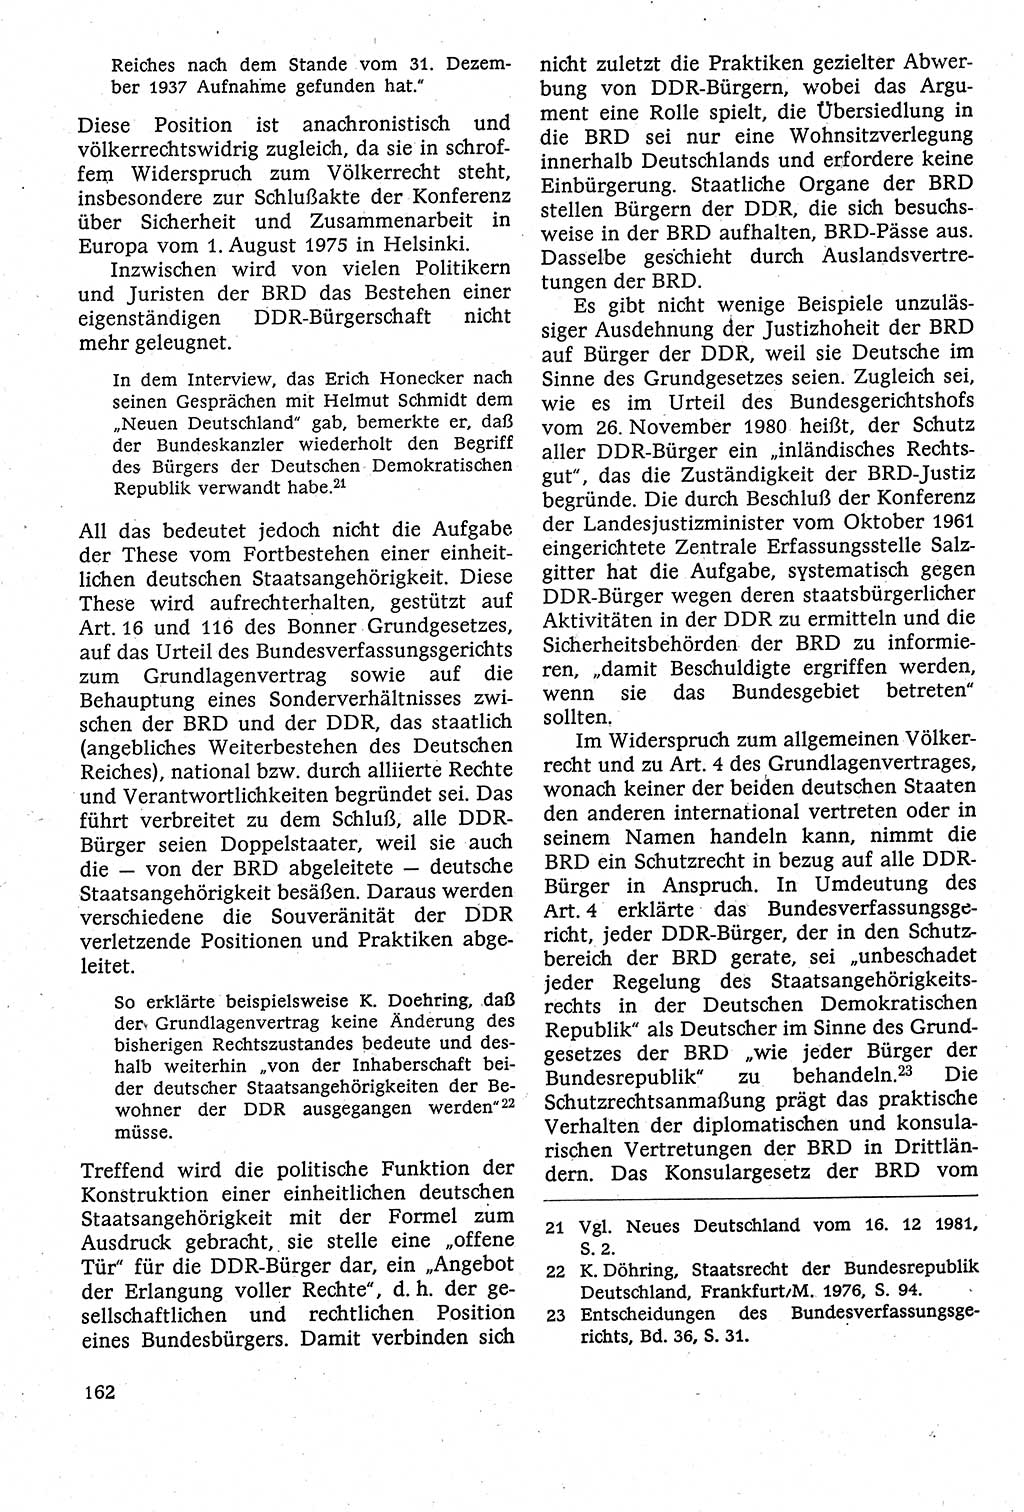 Staatsrecht der DDR [Deutsche Demokratische Republik (DDR)], Lehrbuch 1984, Seite 162 (St.-R. DDR Lb. 1984, S. 162)